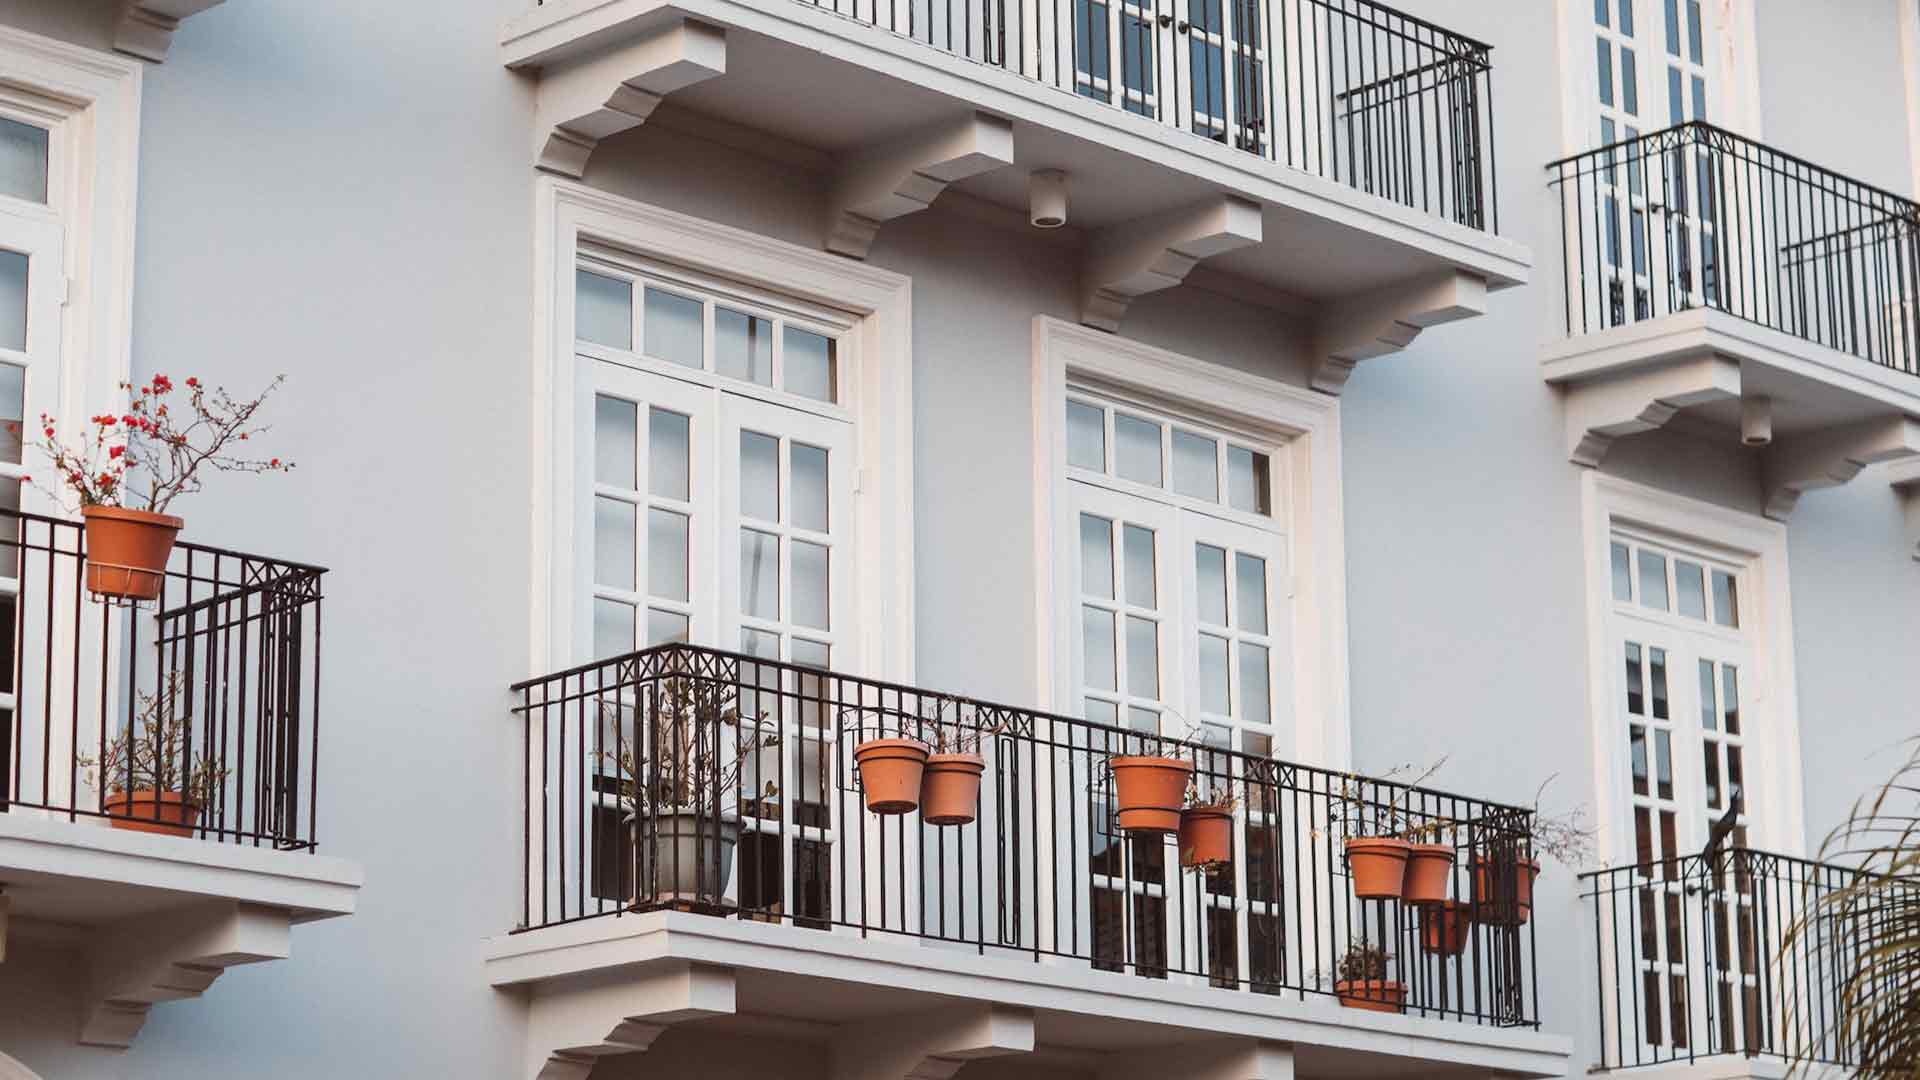 Klassische hohe Sprossen Fenster Loerrach in einem Altbau mit Balkonen